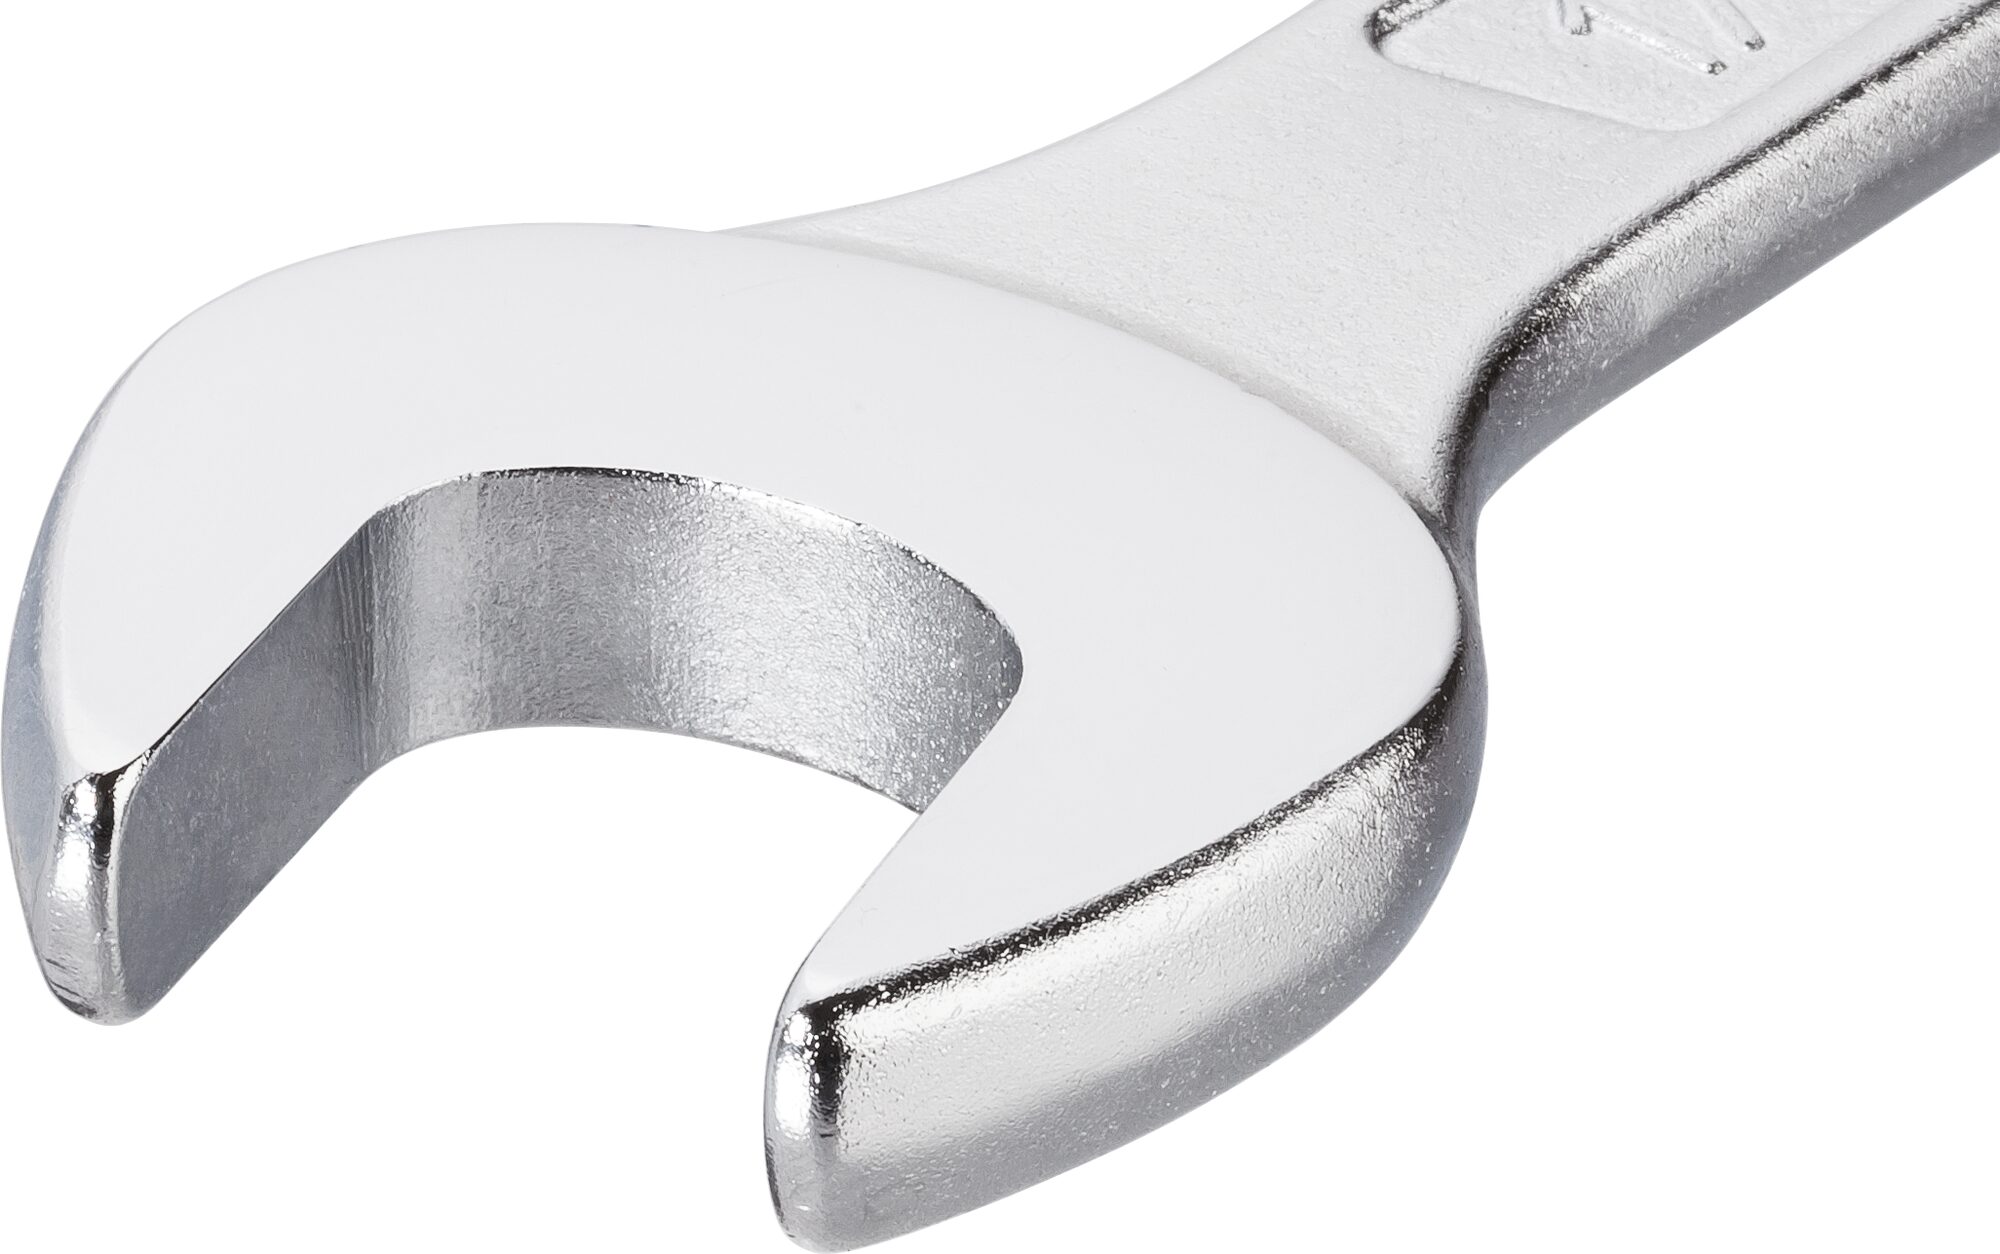 HAZET Ring-Maulschlüssel 600N-7 · Außen Doppel-Sechskant-Tractionsprofil · 7 mm